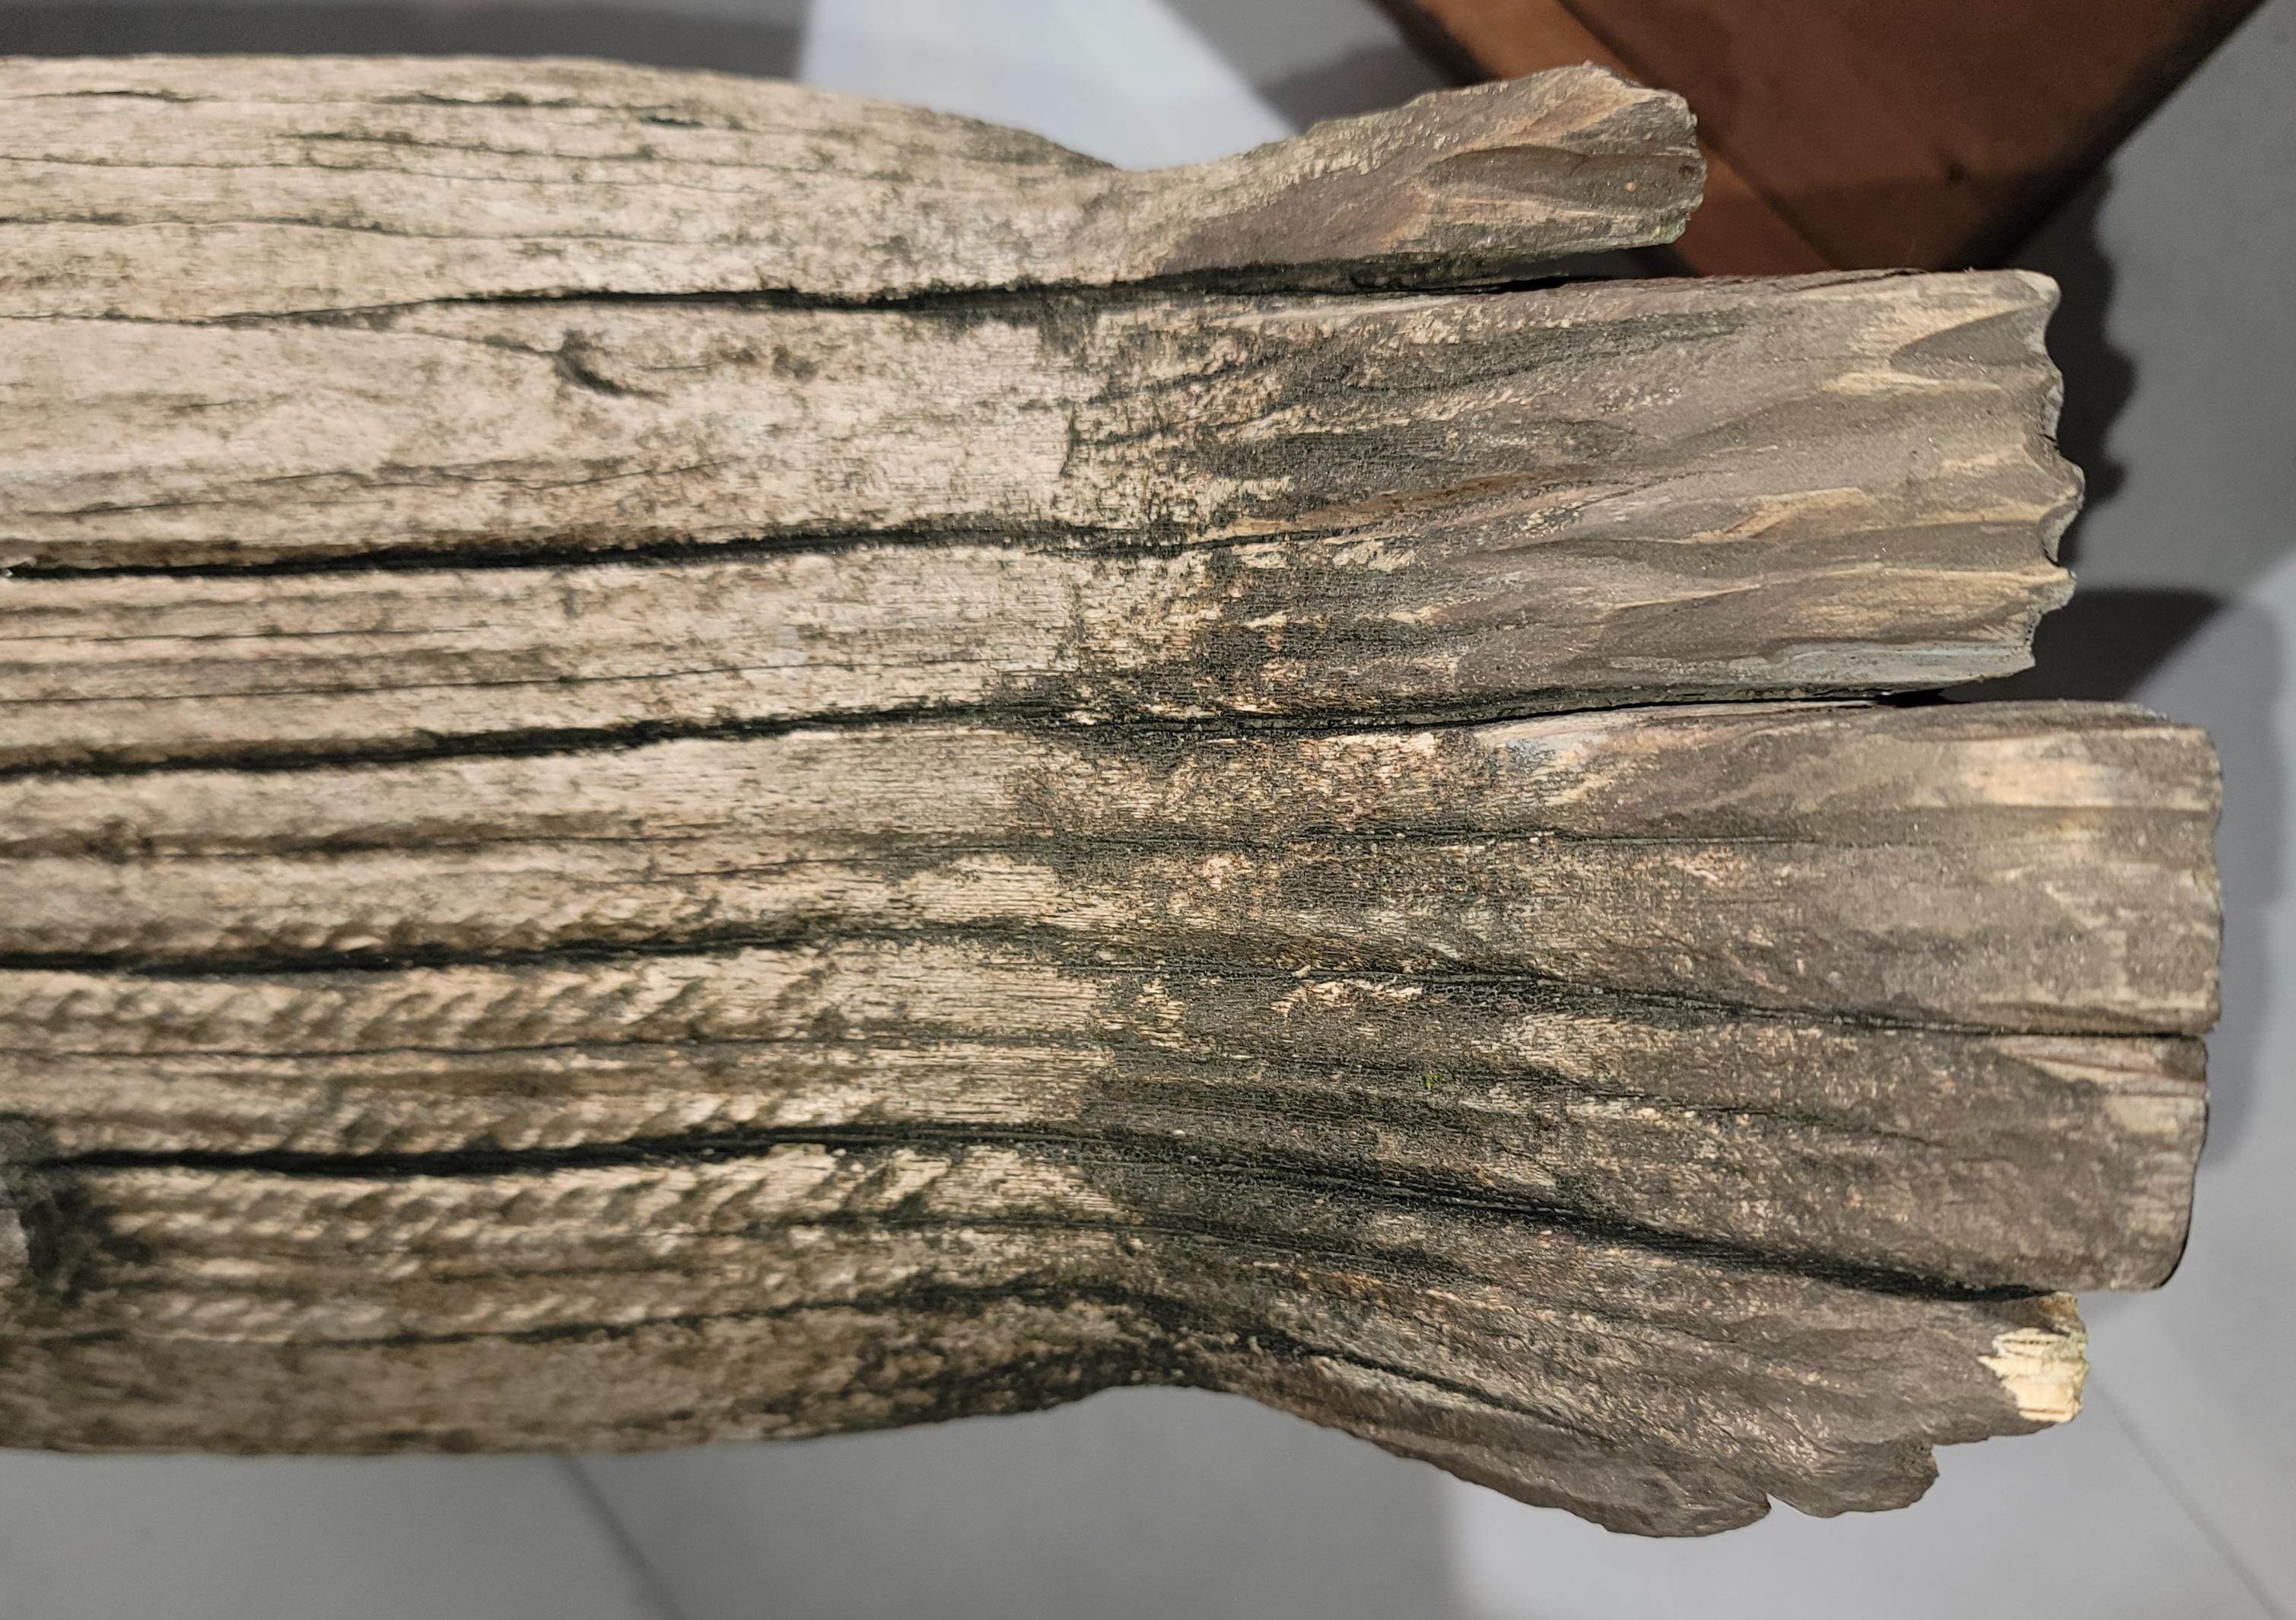 Ce leurre canadien est sculpté à la main à partir d'une seule pièce de bois.Cette oie conserve sa surface extérieure ou patine d'origine.Remarquez la perte de bois et la patine vieillie.